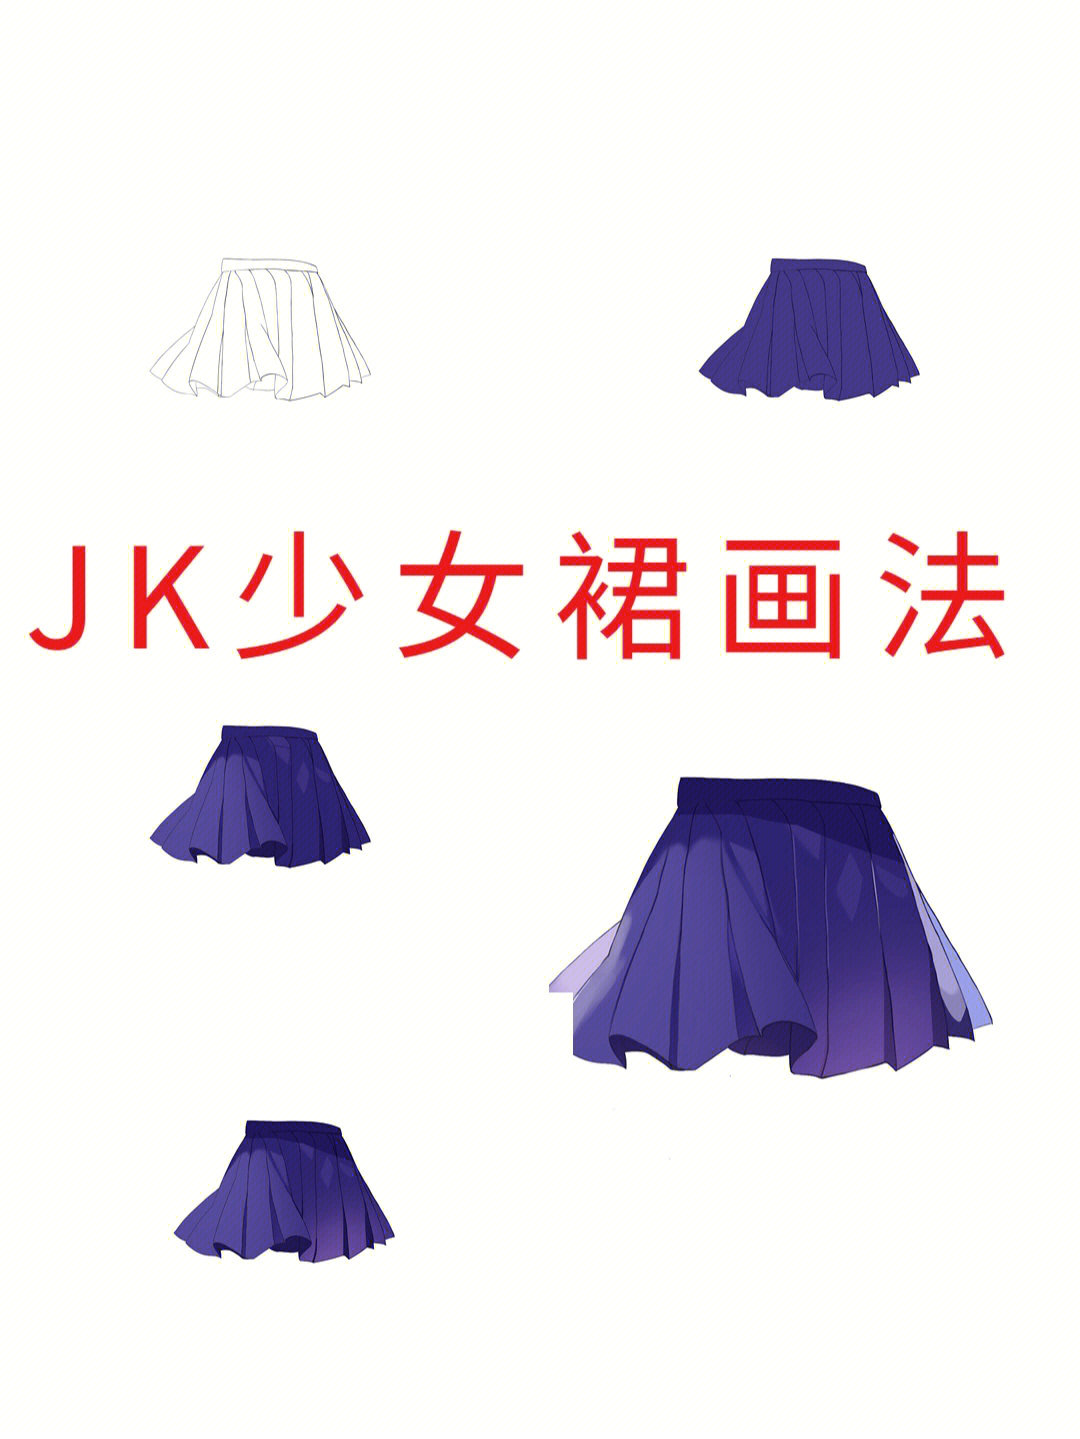 jk裙是怎样一步步绘制出来的呢绘制过程:1,首先我们先画好一个裙子的